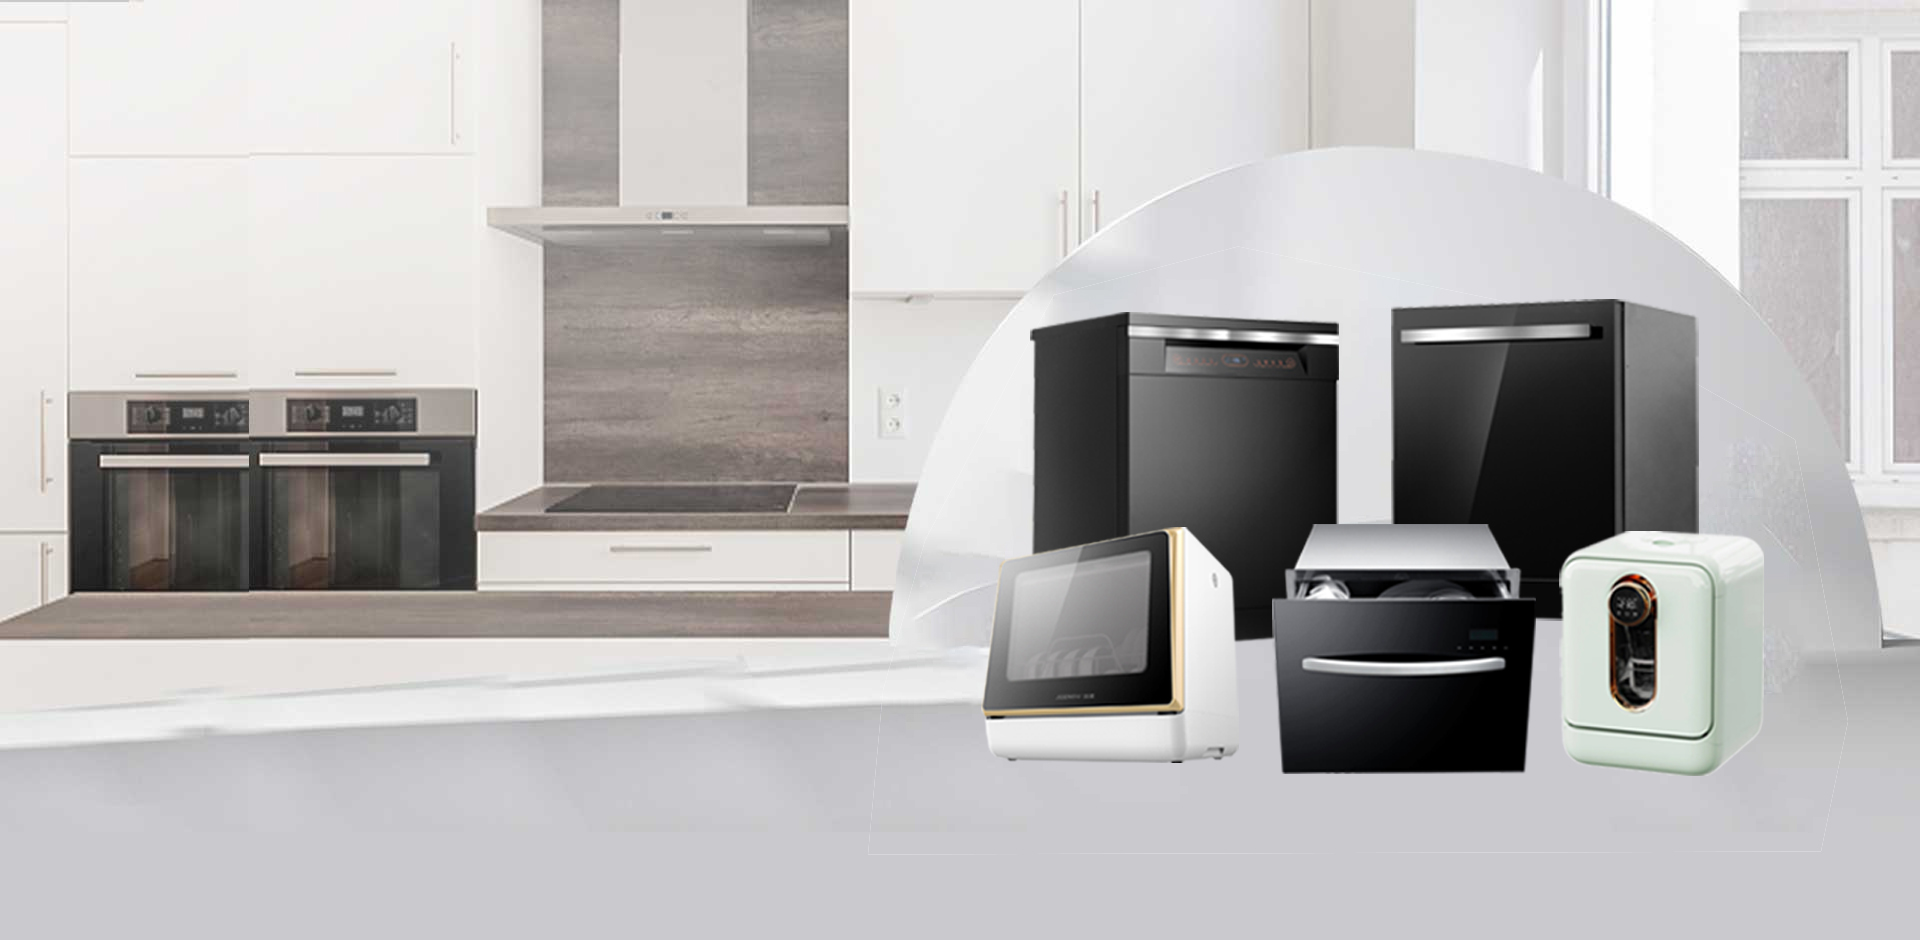 Jeenow Высокая эффективность и энергосбережение Посудомоечные машины